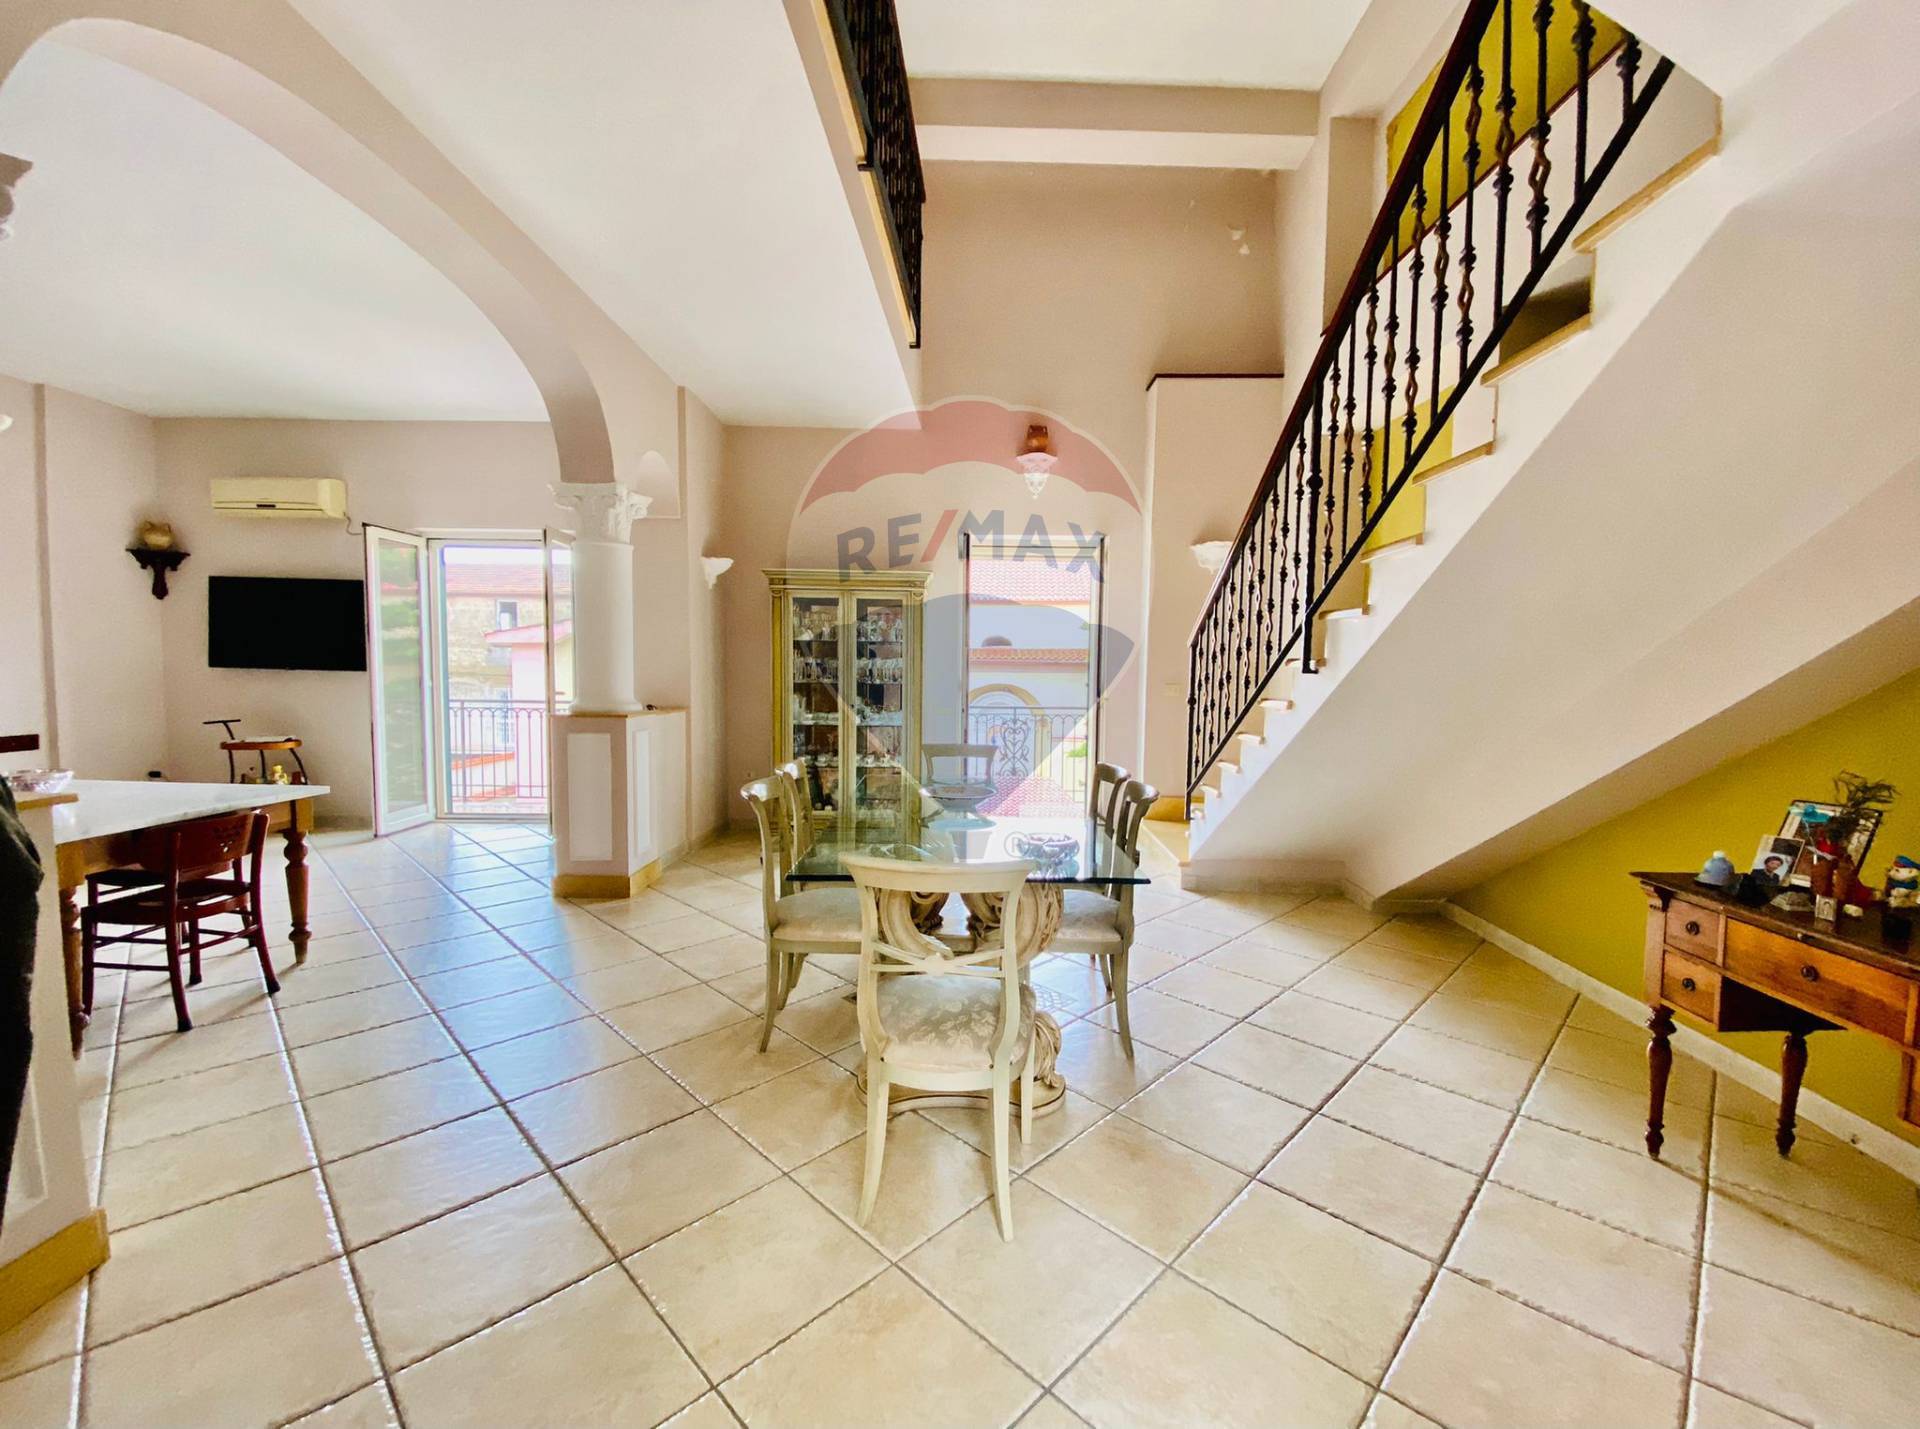 Appartamento in vendita a Casandrino, 4 locali, prezzo € 225.000 | CambioCasa.it